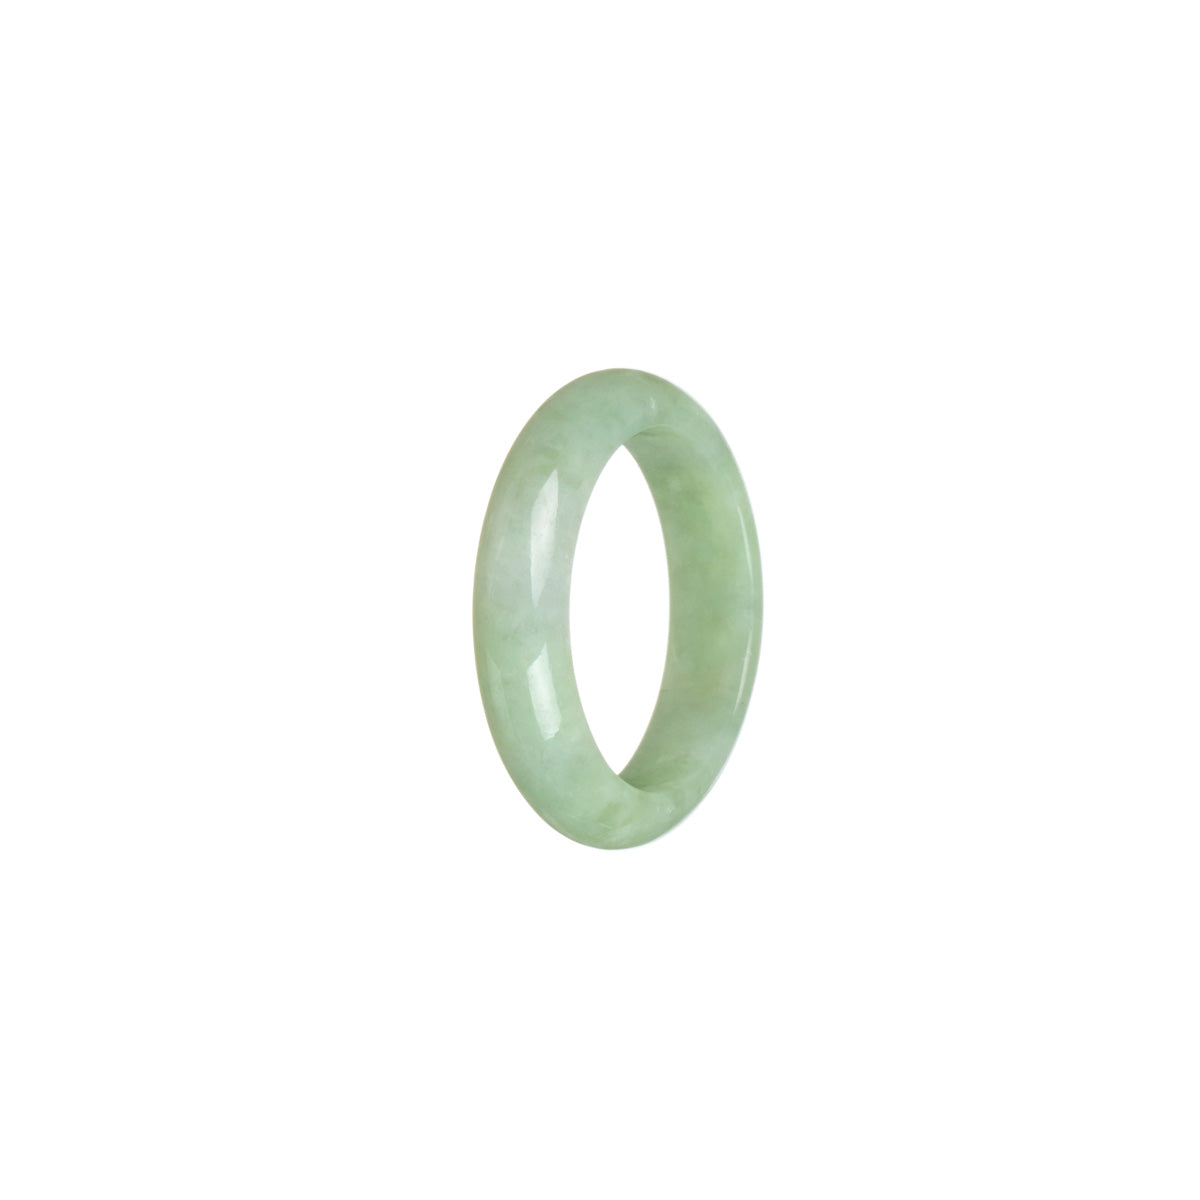 Genuine Light green Burmese Jade Ring - Size S 1/2